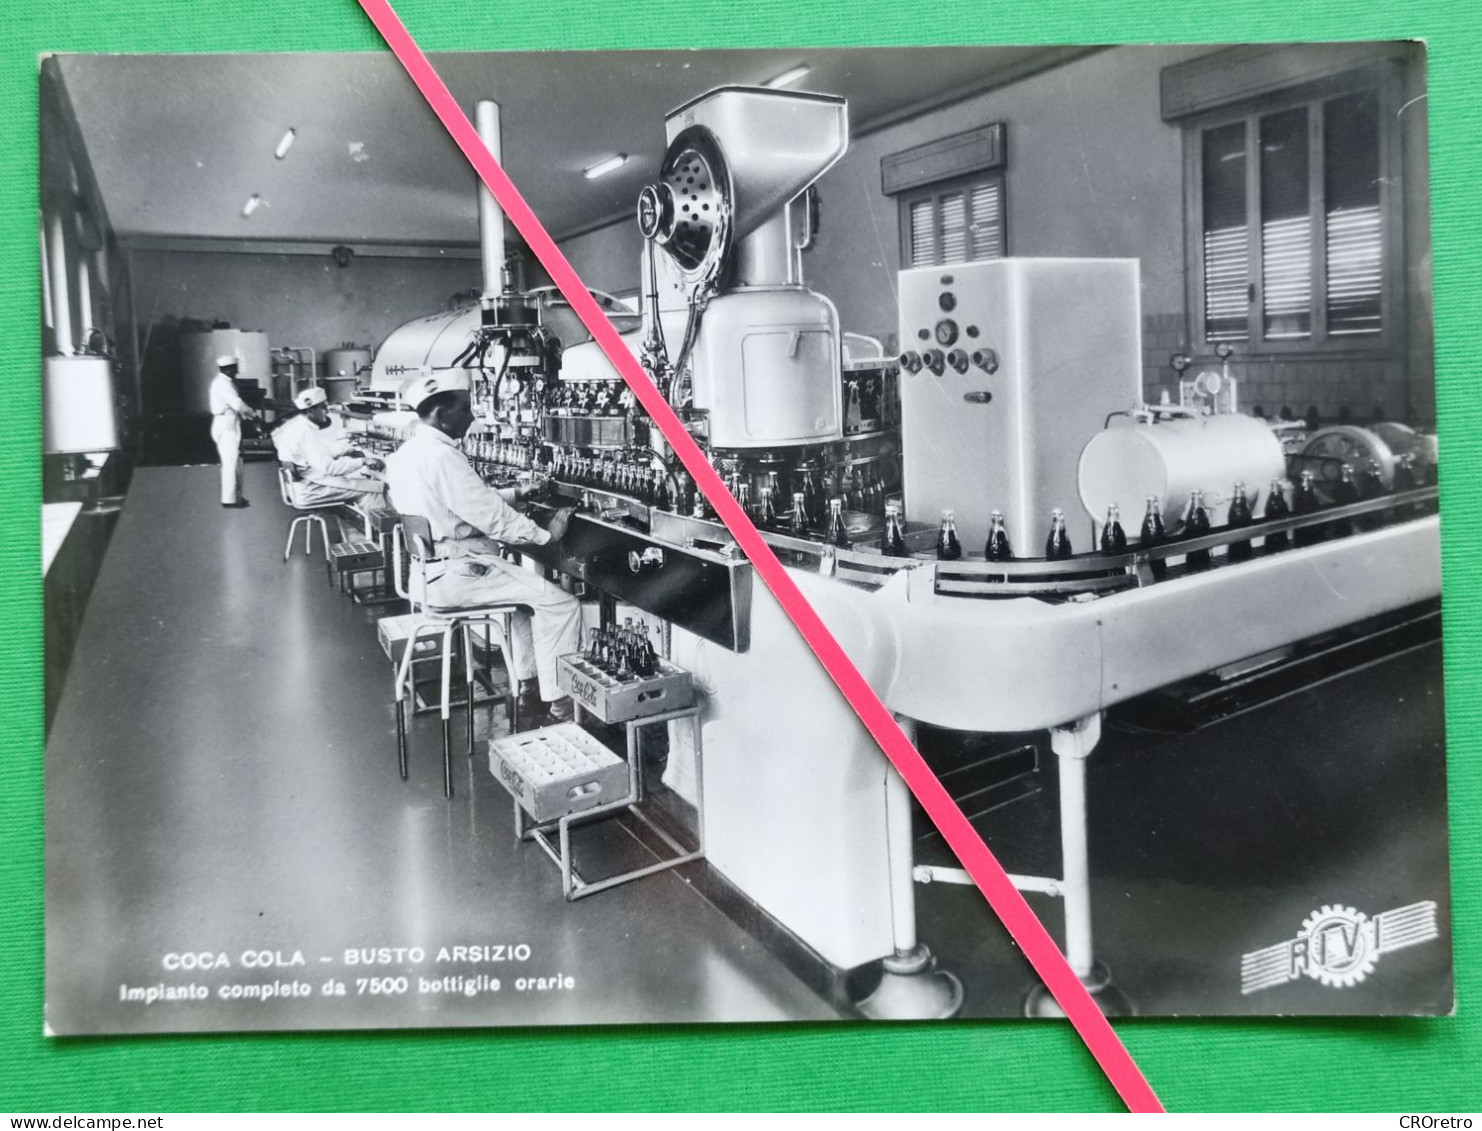 COCA COLA - BUSTO ARSIZIO, Factory Industrial Lines, Photo Postcard 1950's (DCP01) - Advertising